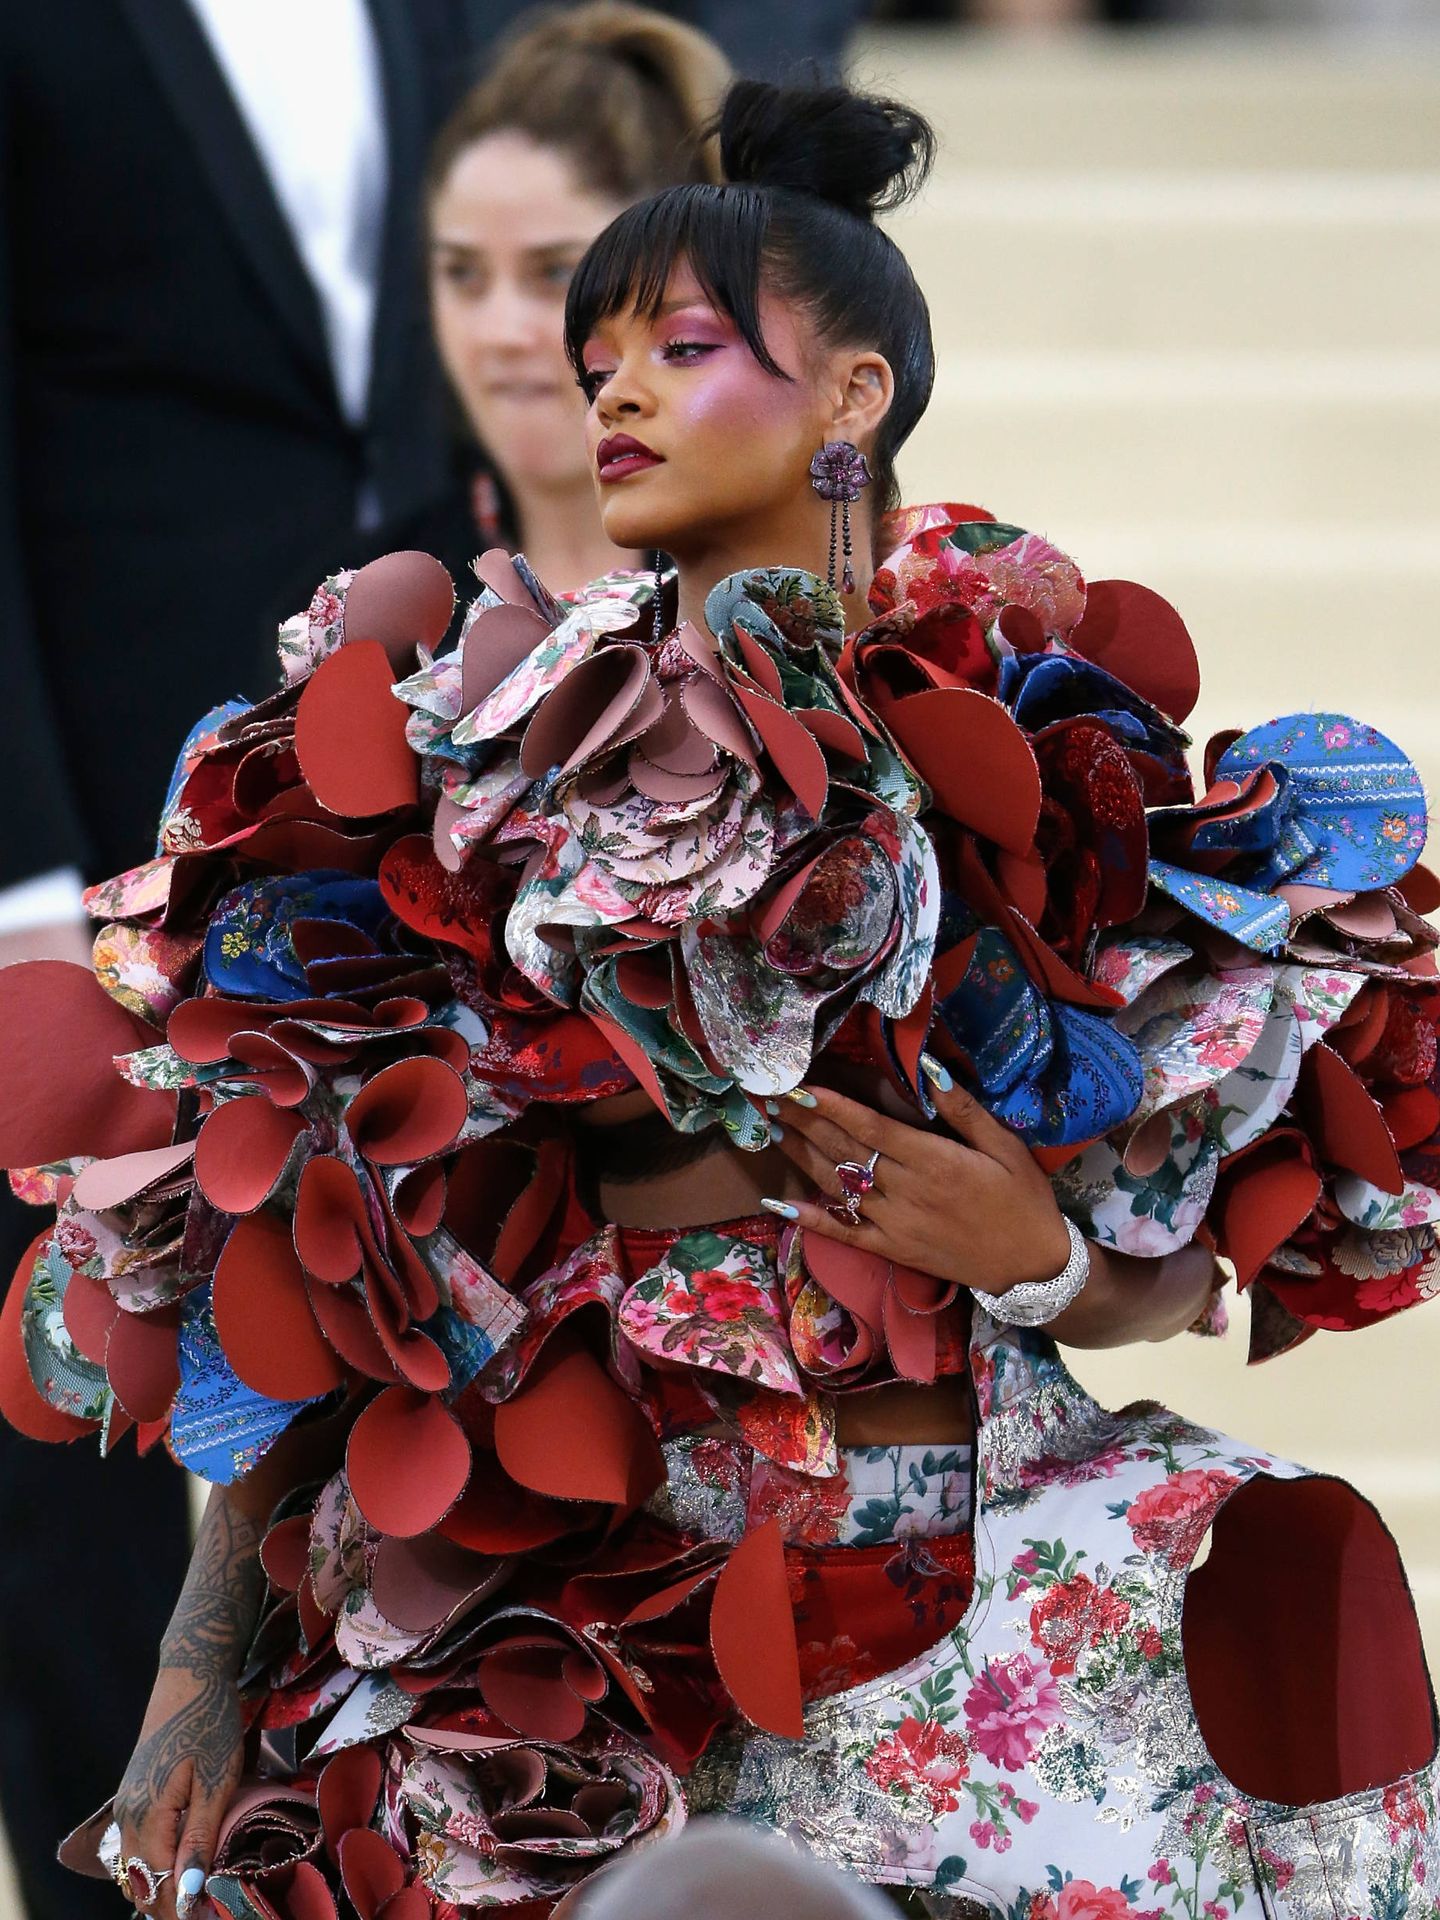 La cantante Rihanna llegando a la presentación de la exposición 'Rei Kawakubo/Comme des Garcons: Art Of The In-Between' en Nueva York (John Lamparski/Getty Images)